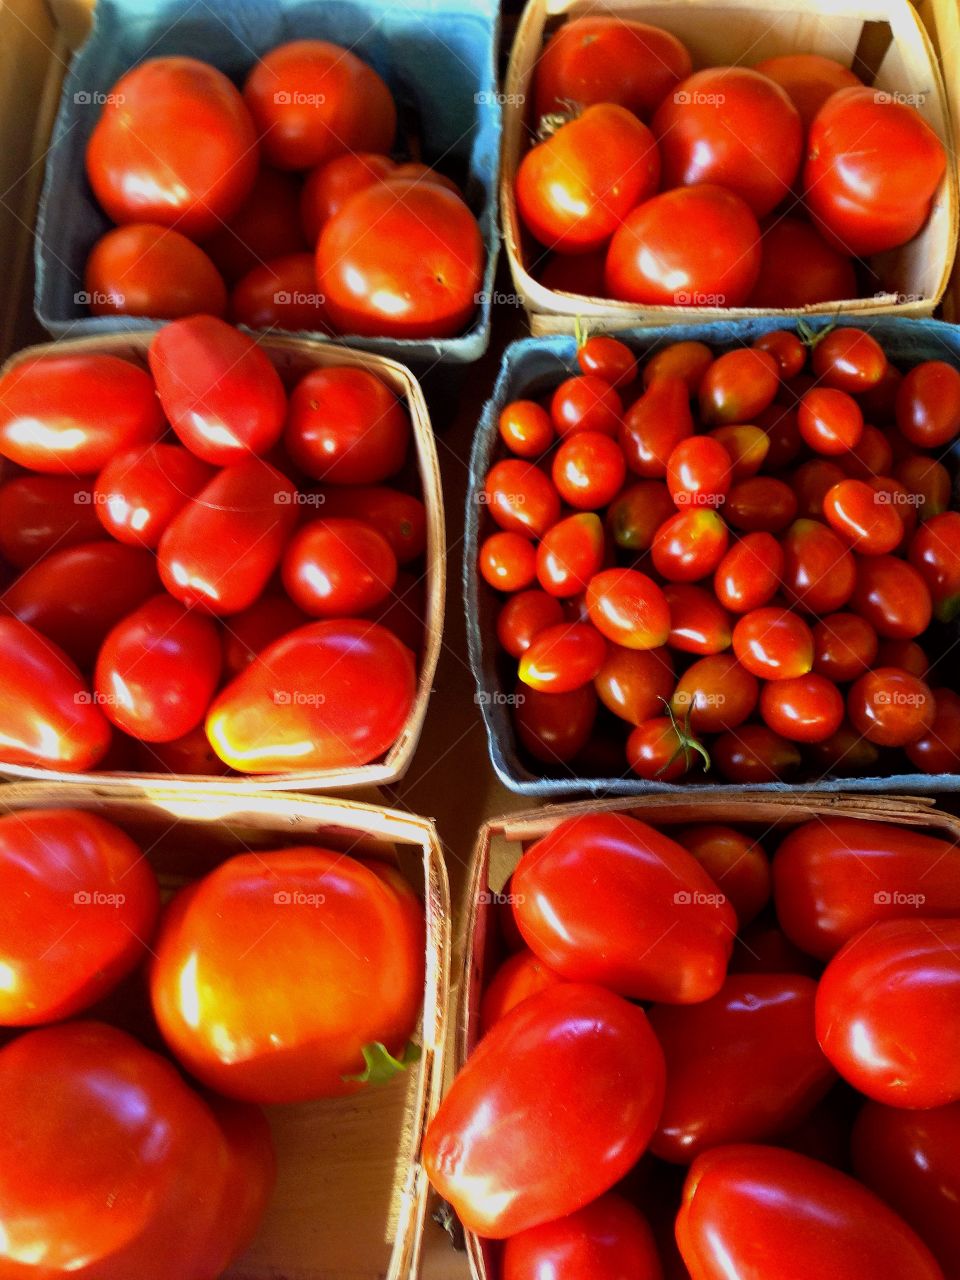 Farmers Market Tomatoes. Farmers Market Tomatoes